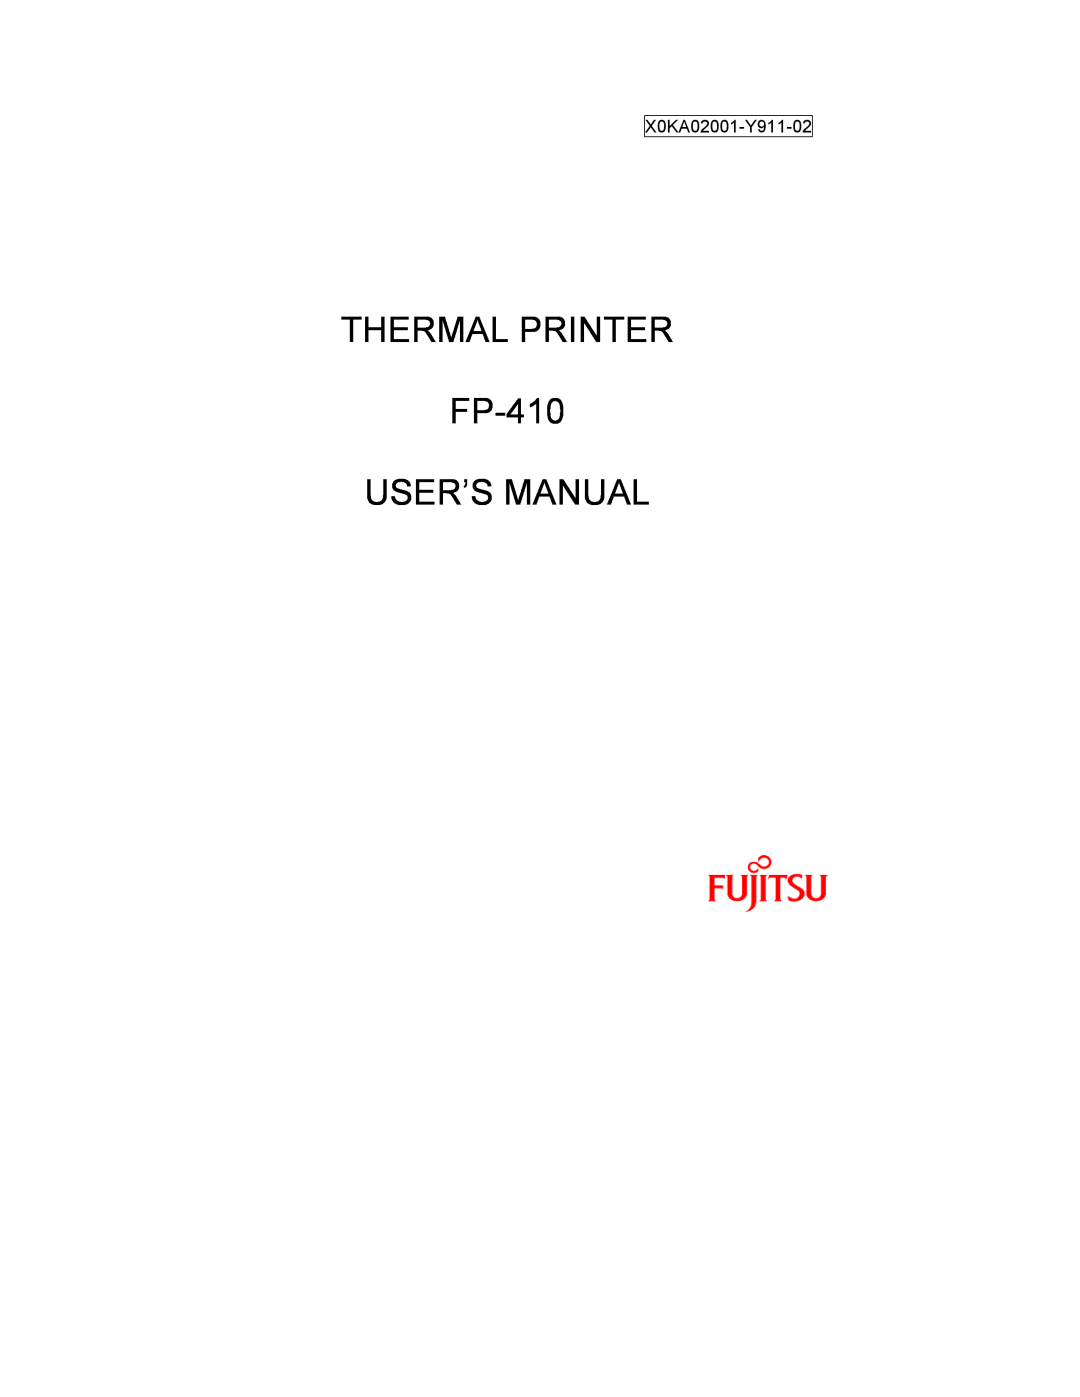 Fujitsu user manual THERMAL PRINTER FP-410 USER’S MANUAL, X0KA02001-Y911-02 